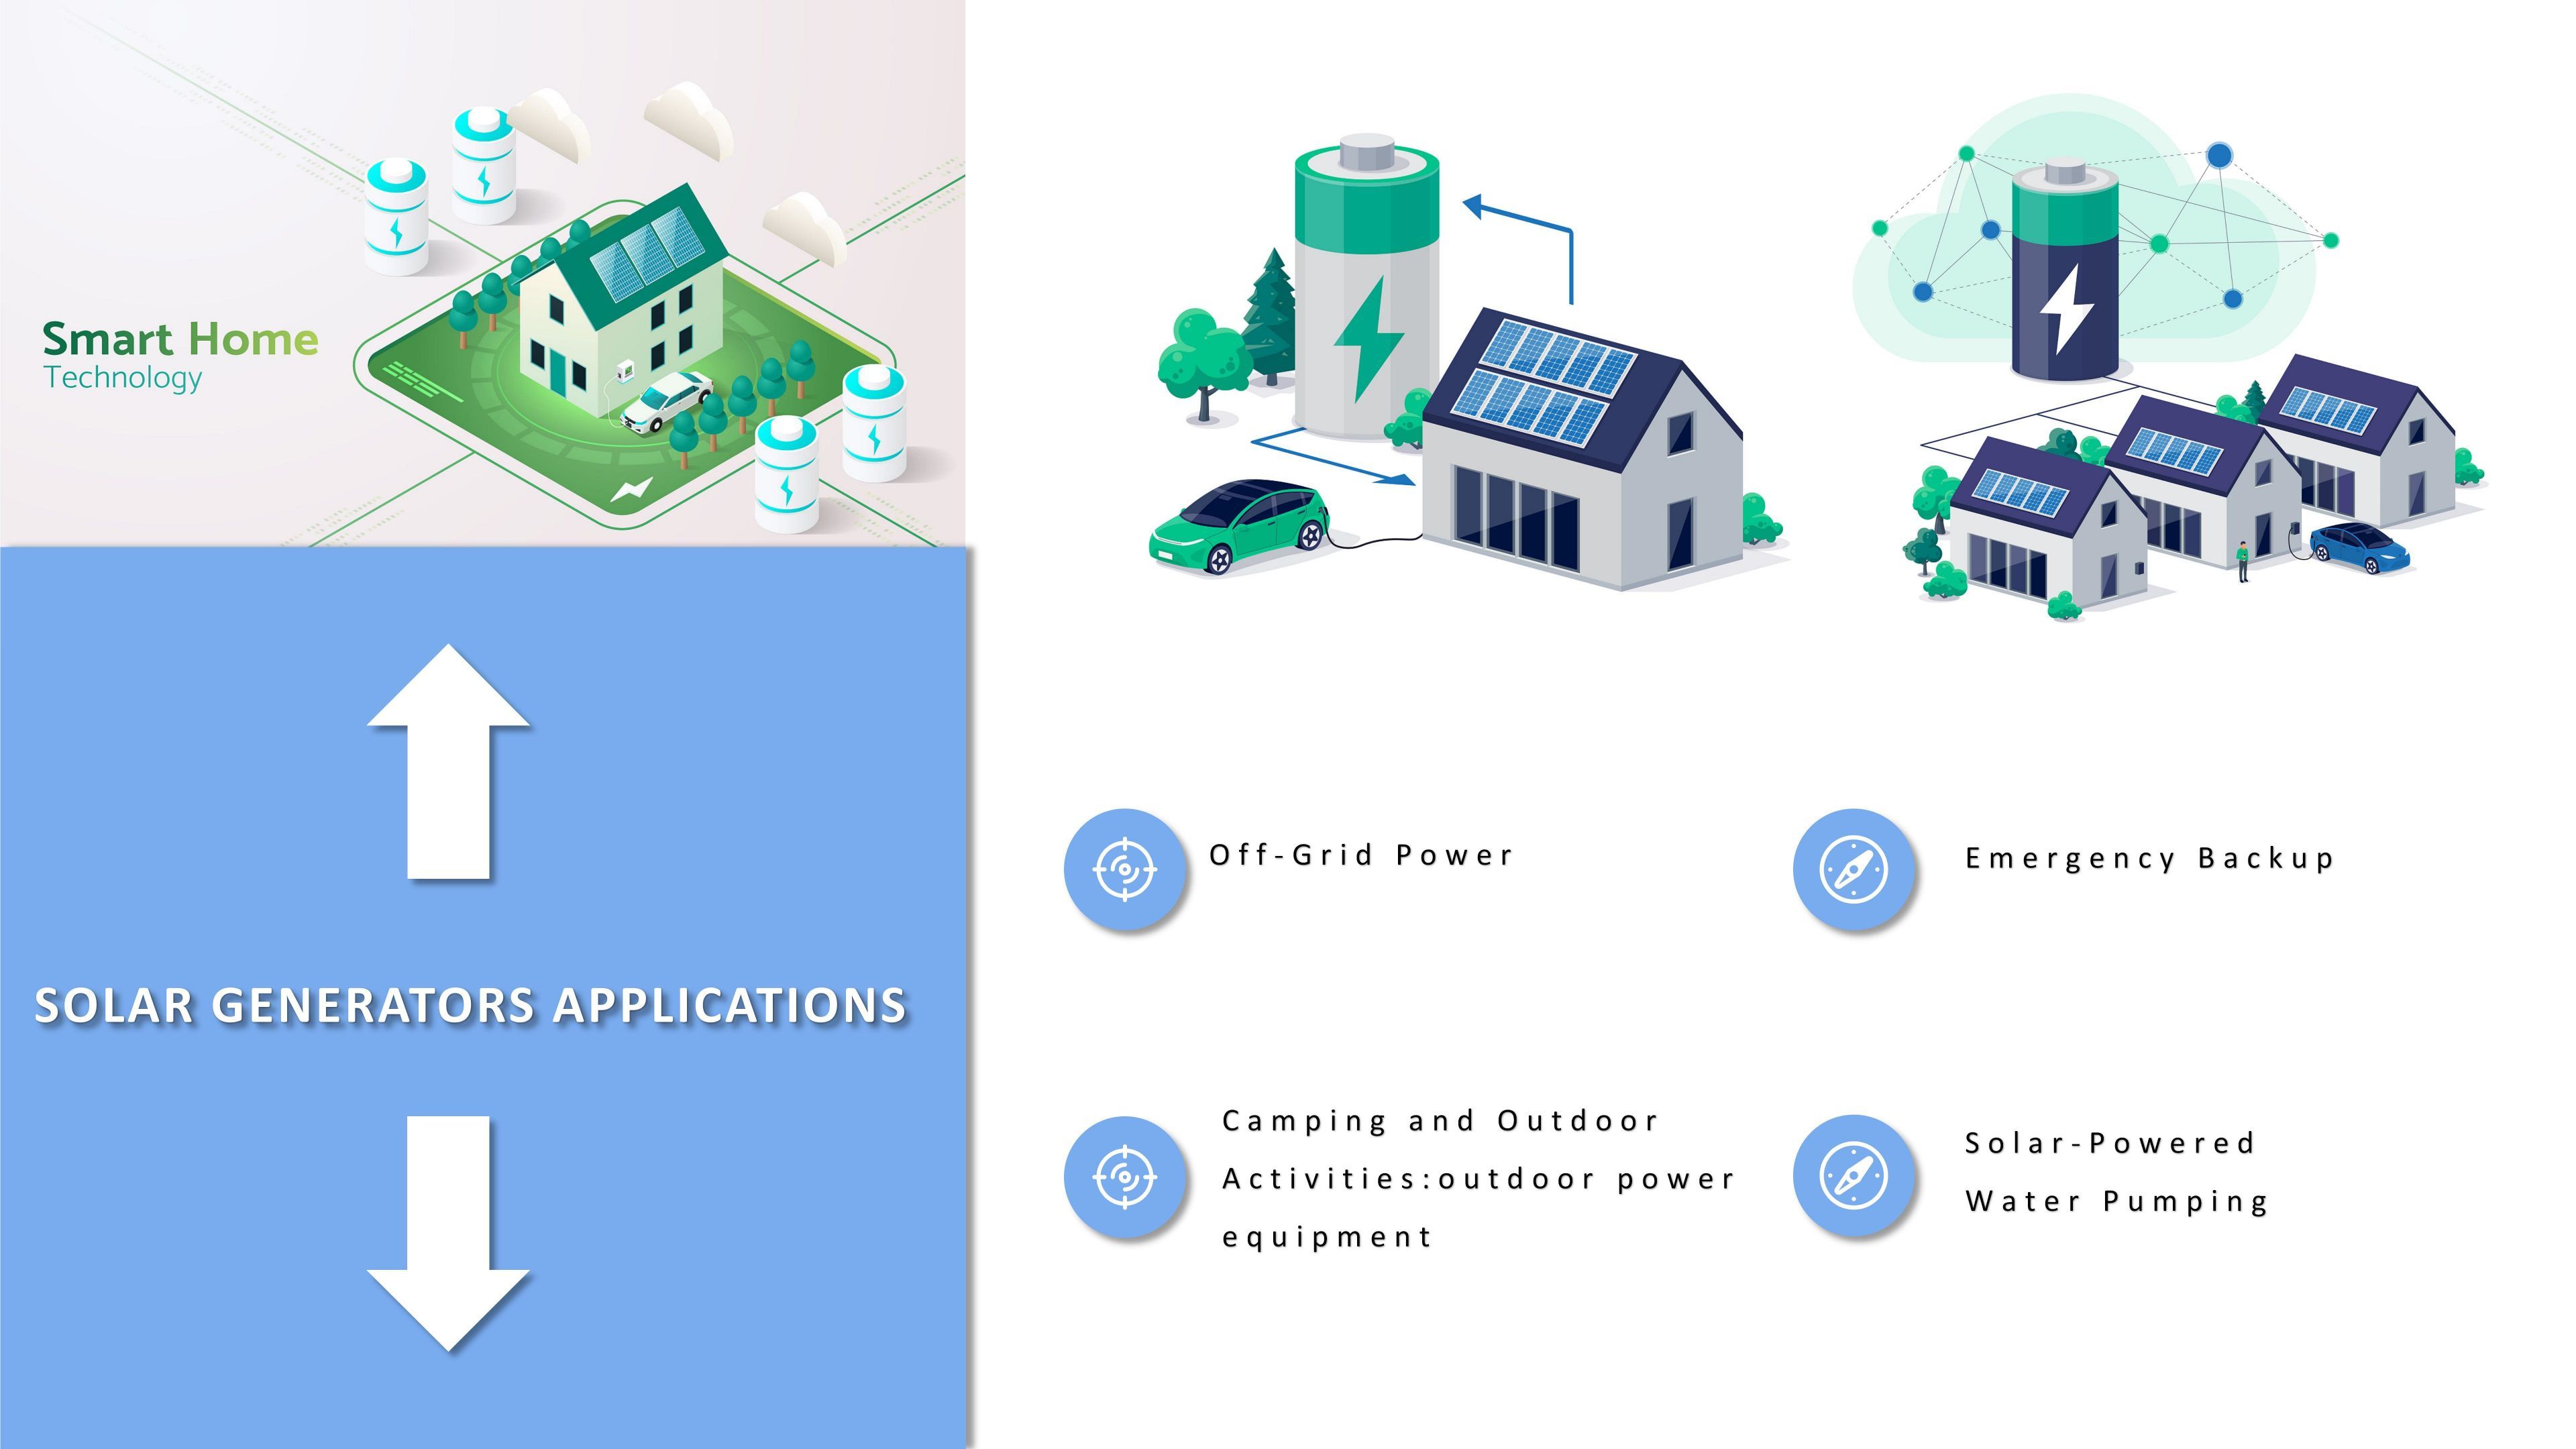 Solar generators applications